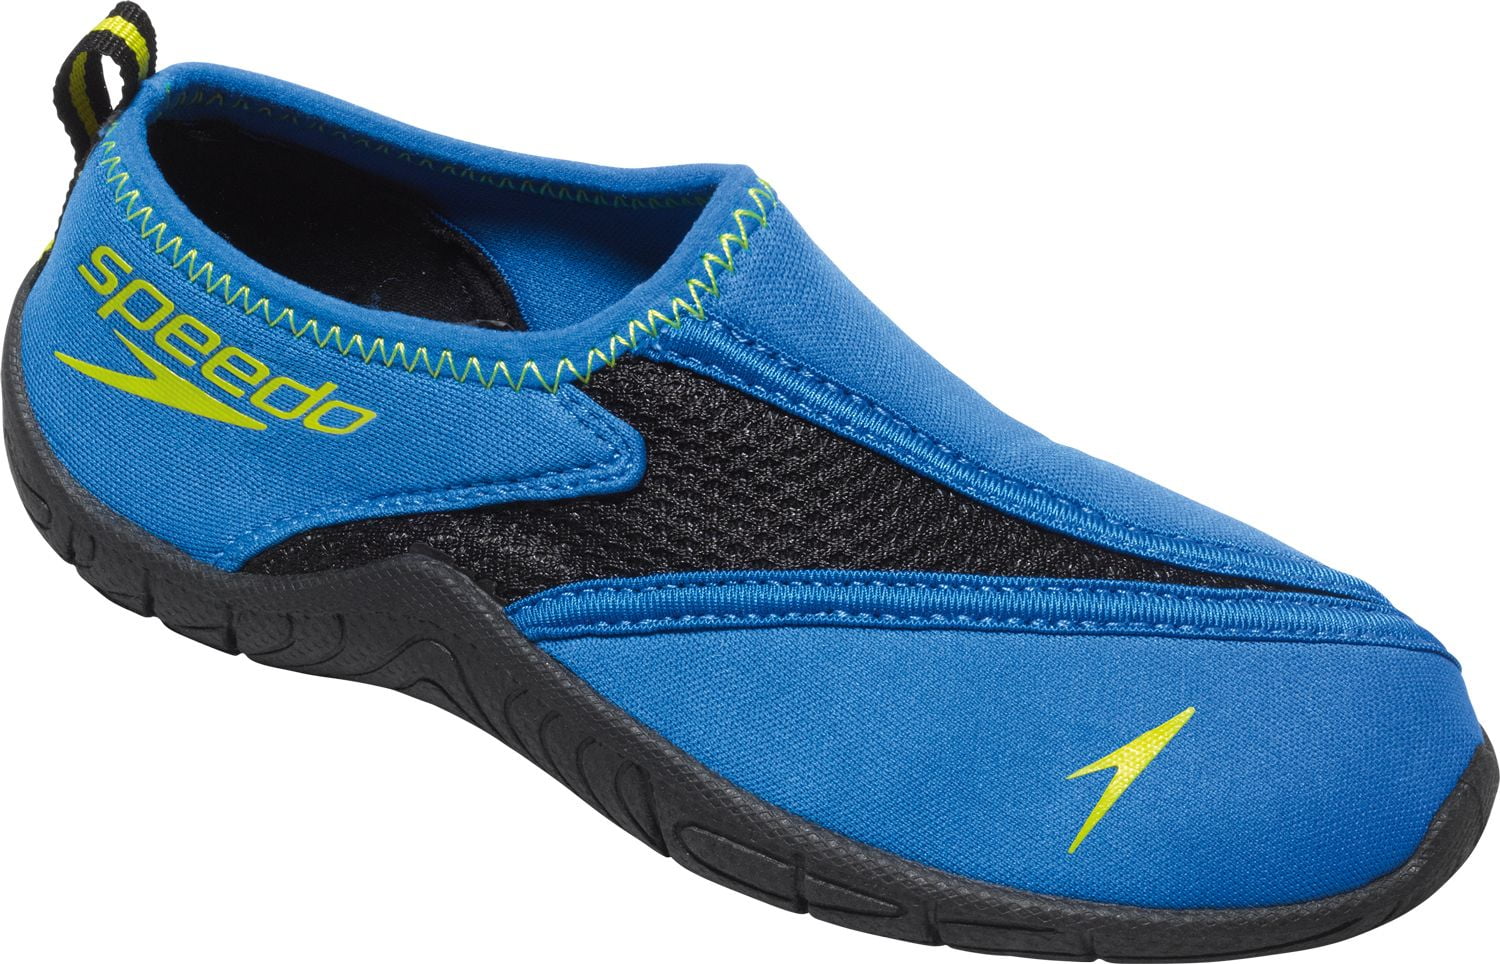 surfwalker water shoes